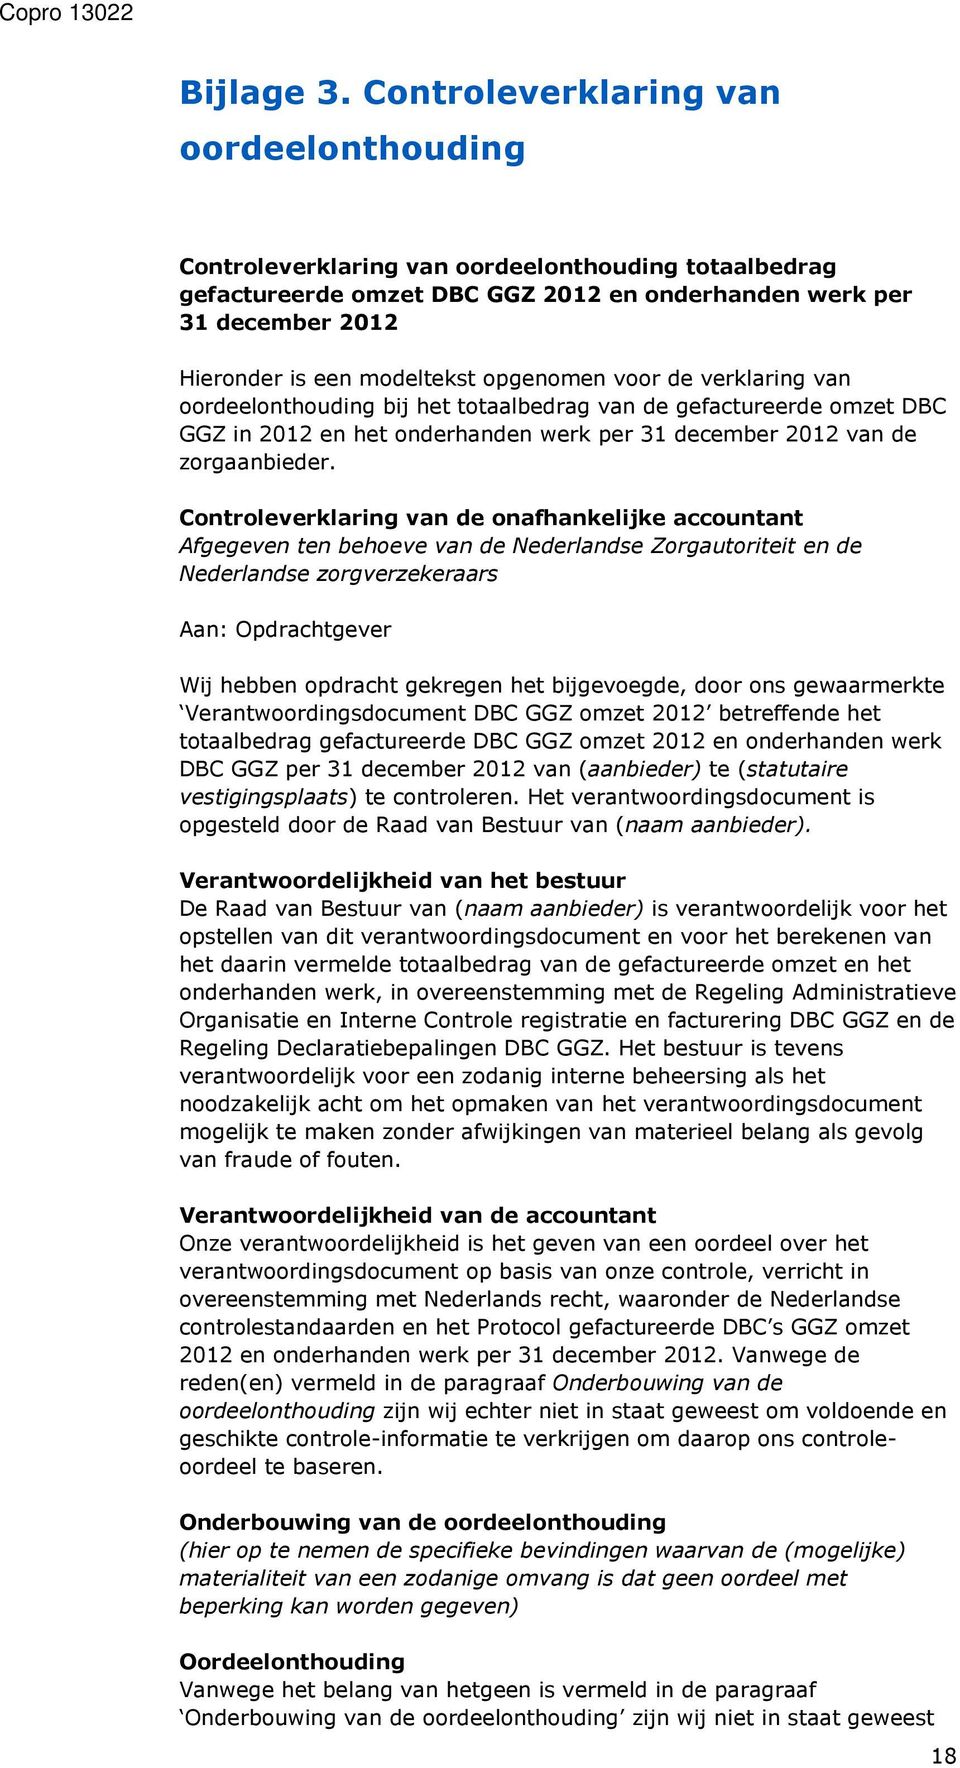 opgenomen voor de verklaring van oordeelonthouding bij het totaalbedrag van de gefactureerde omzet DBC GGZ in 2012 en het onderhanden werk per 31 december 2012 van de zorgaanbieder.